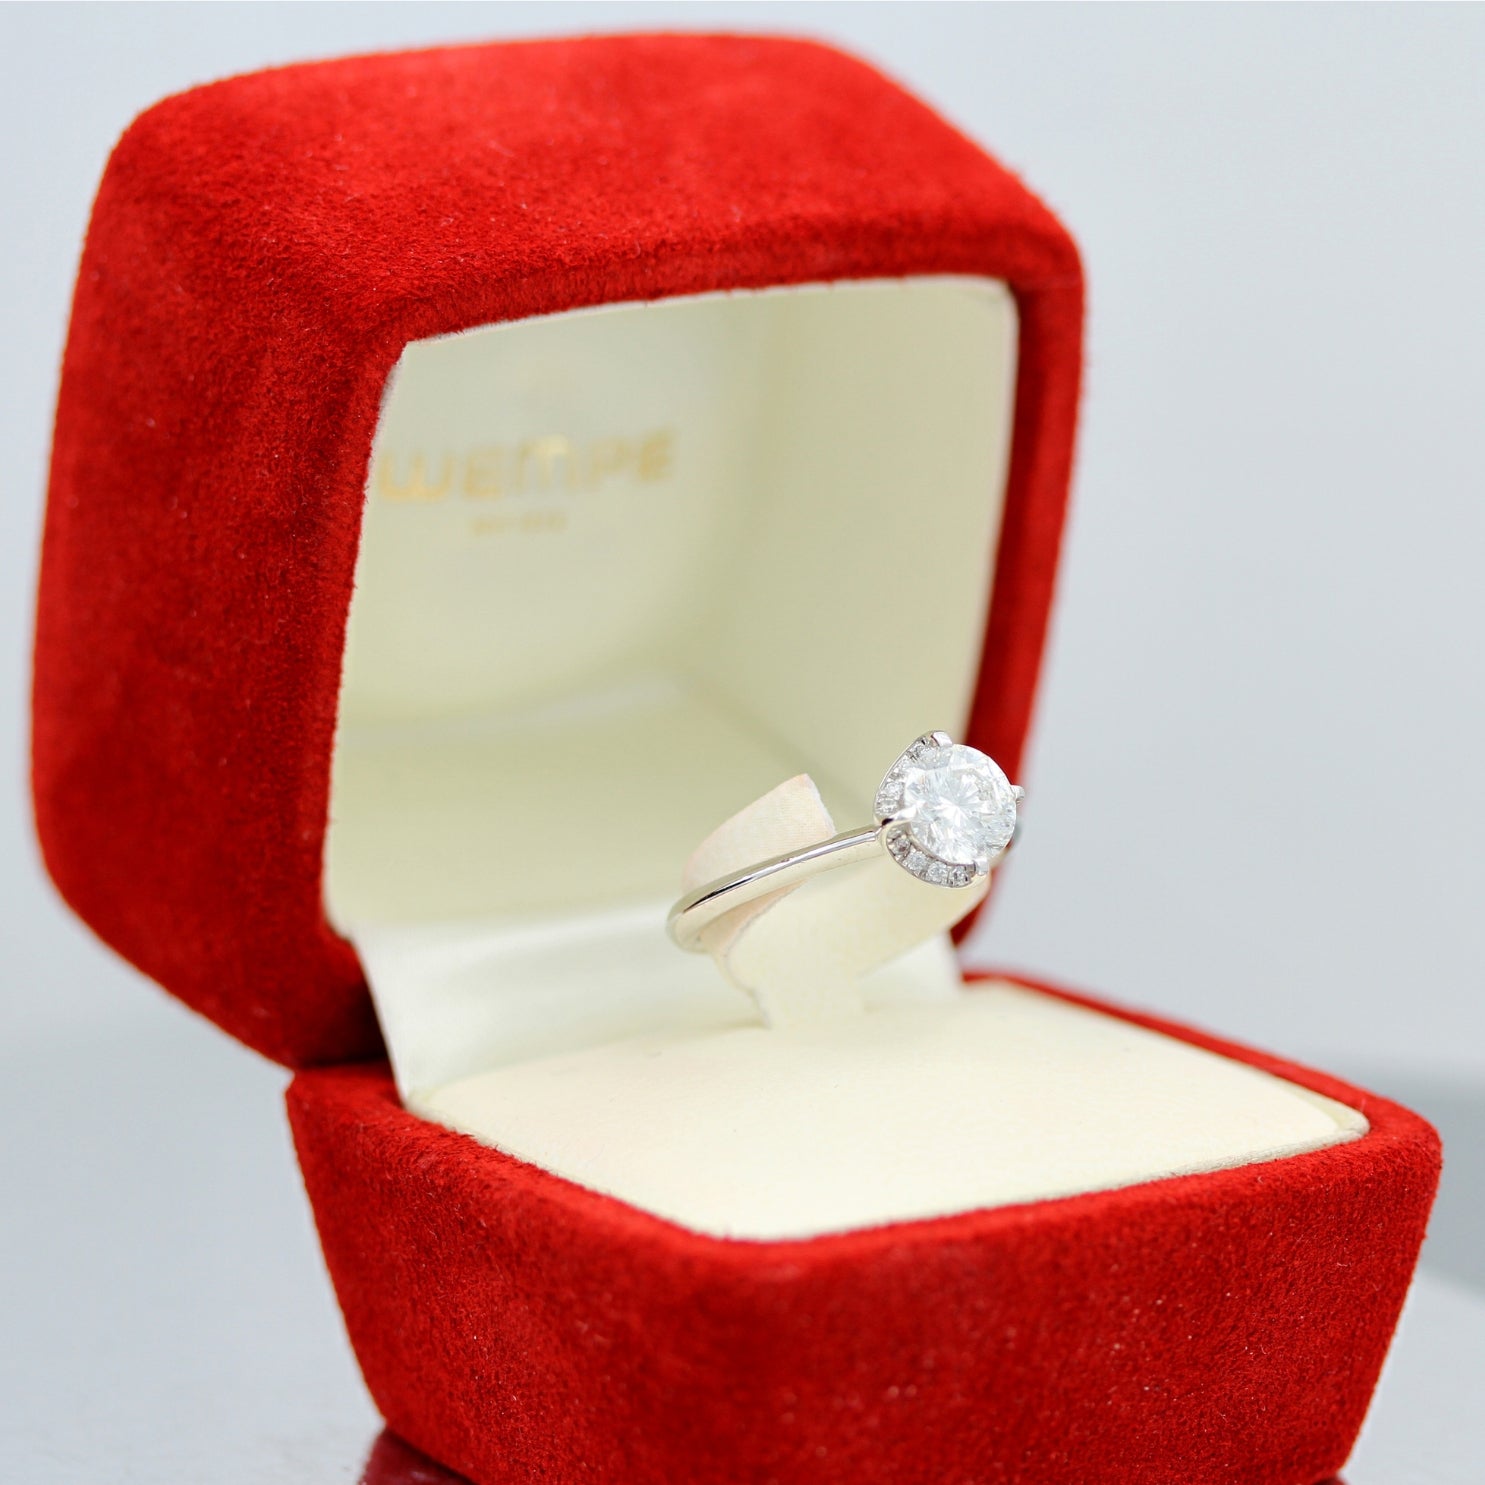 Wempe BY KIM, Ring Splendora, 18kt Weißgold, 1 Diamant WEMPE Cut 1.50ct, 20 Brillanten 0.15ct - LUXUHRIA